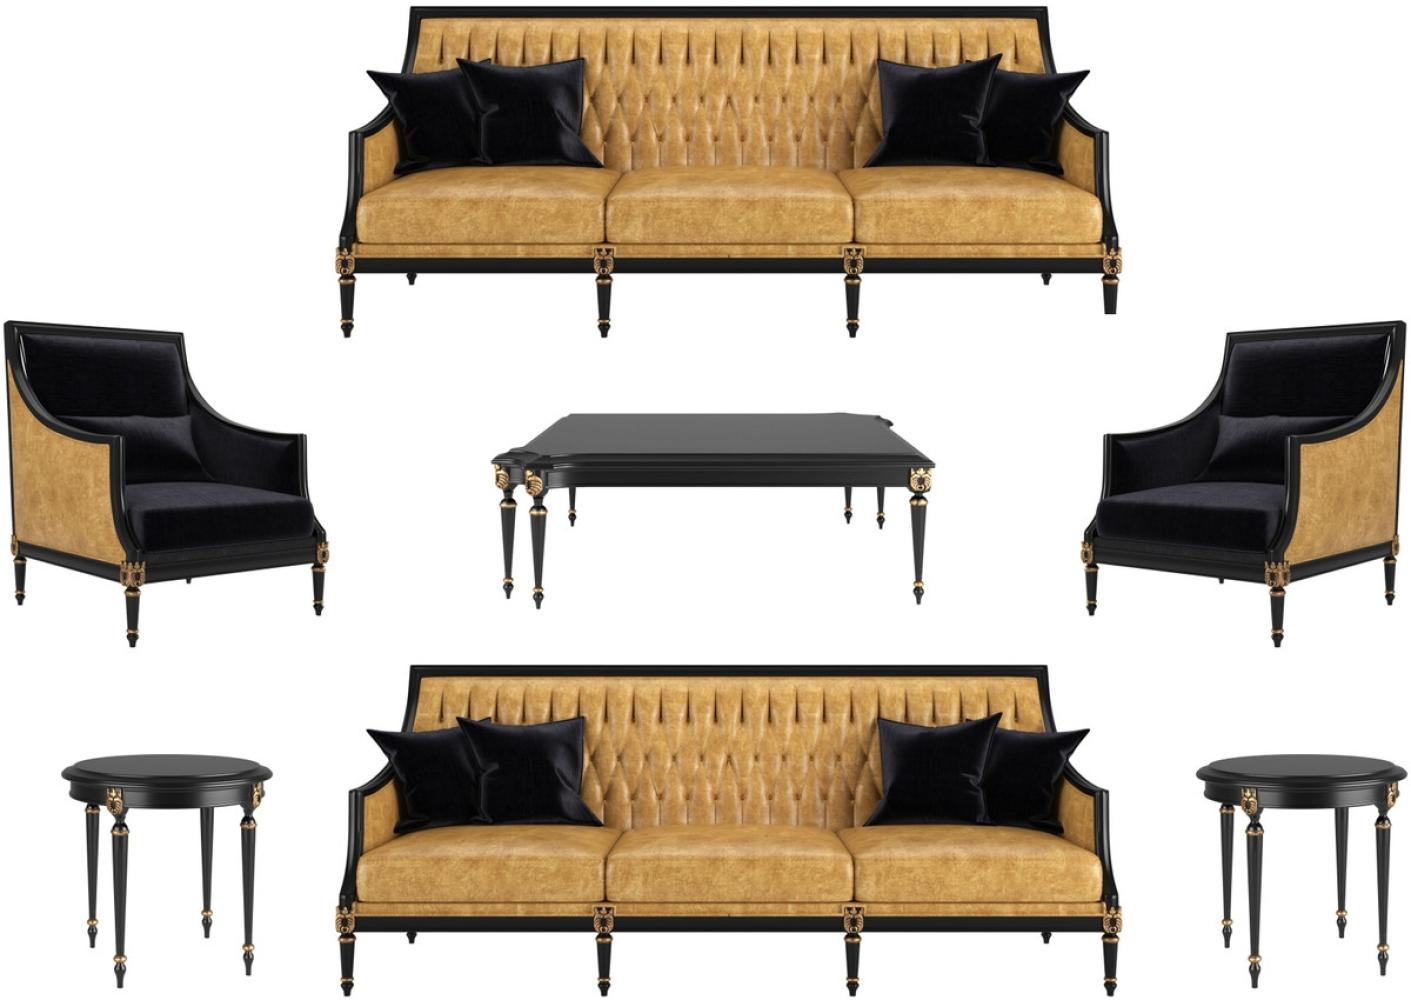 Casa Padrino Luxus Barock Wohnzimmer Set Gold / Schwarz / Antik Gold - 2 Sofas & 2 Sessel & 1 Couchtisch & 2 Beistelltische - Möbel im Barockstil - Edle Barock Wohnzimmer Möbel Bild 1